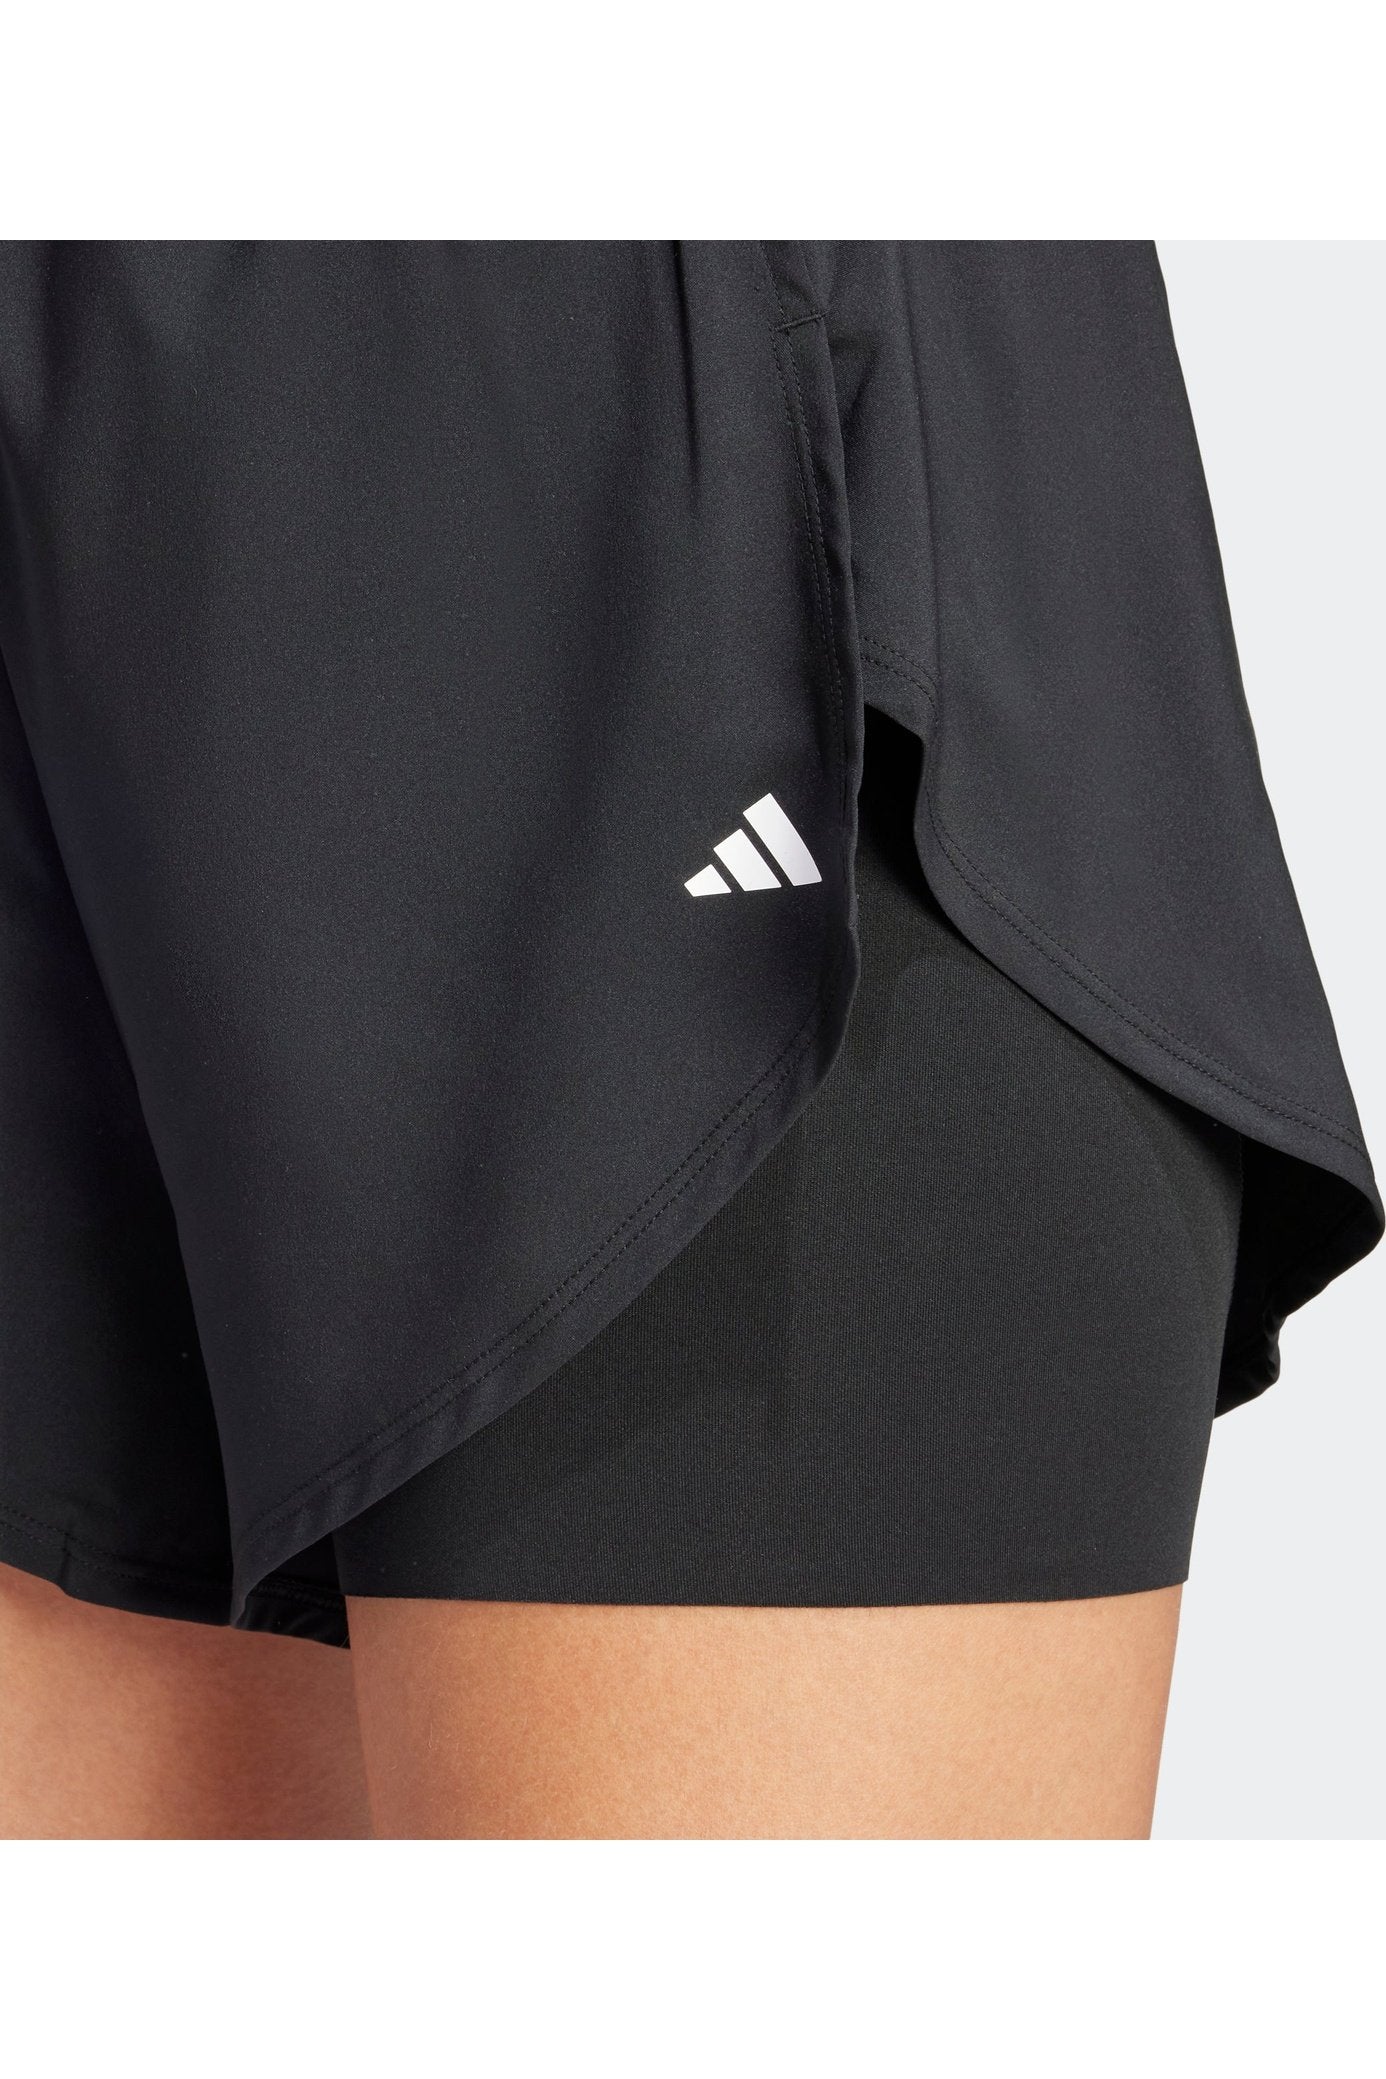 מכנסיים קצרים לנשים DESIGNED FOR TRAINING 2-IN-1  בצבע שחור